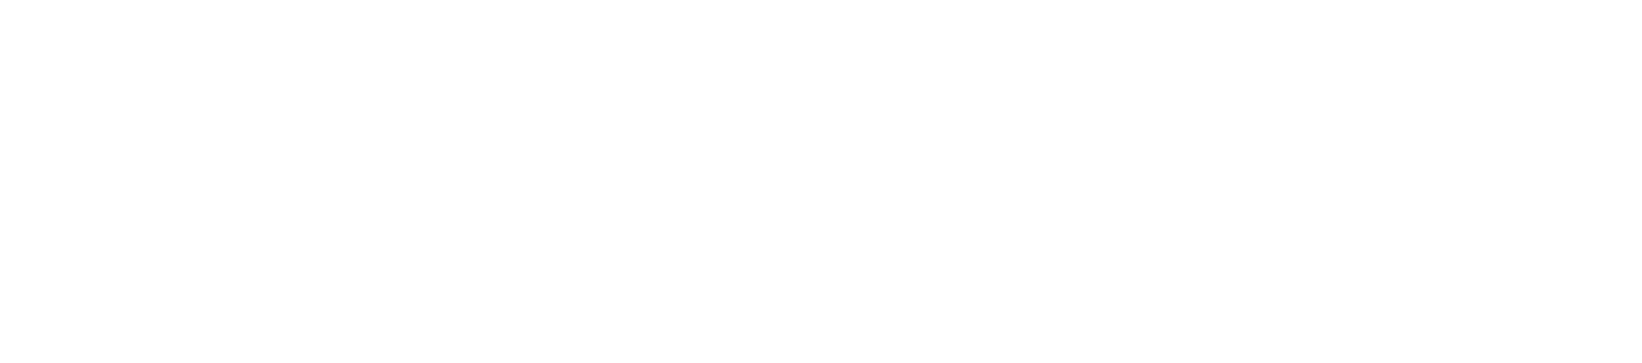 105-九州平台-九州(中国)